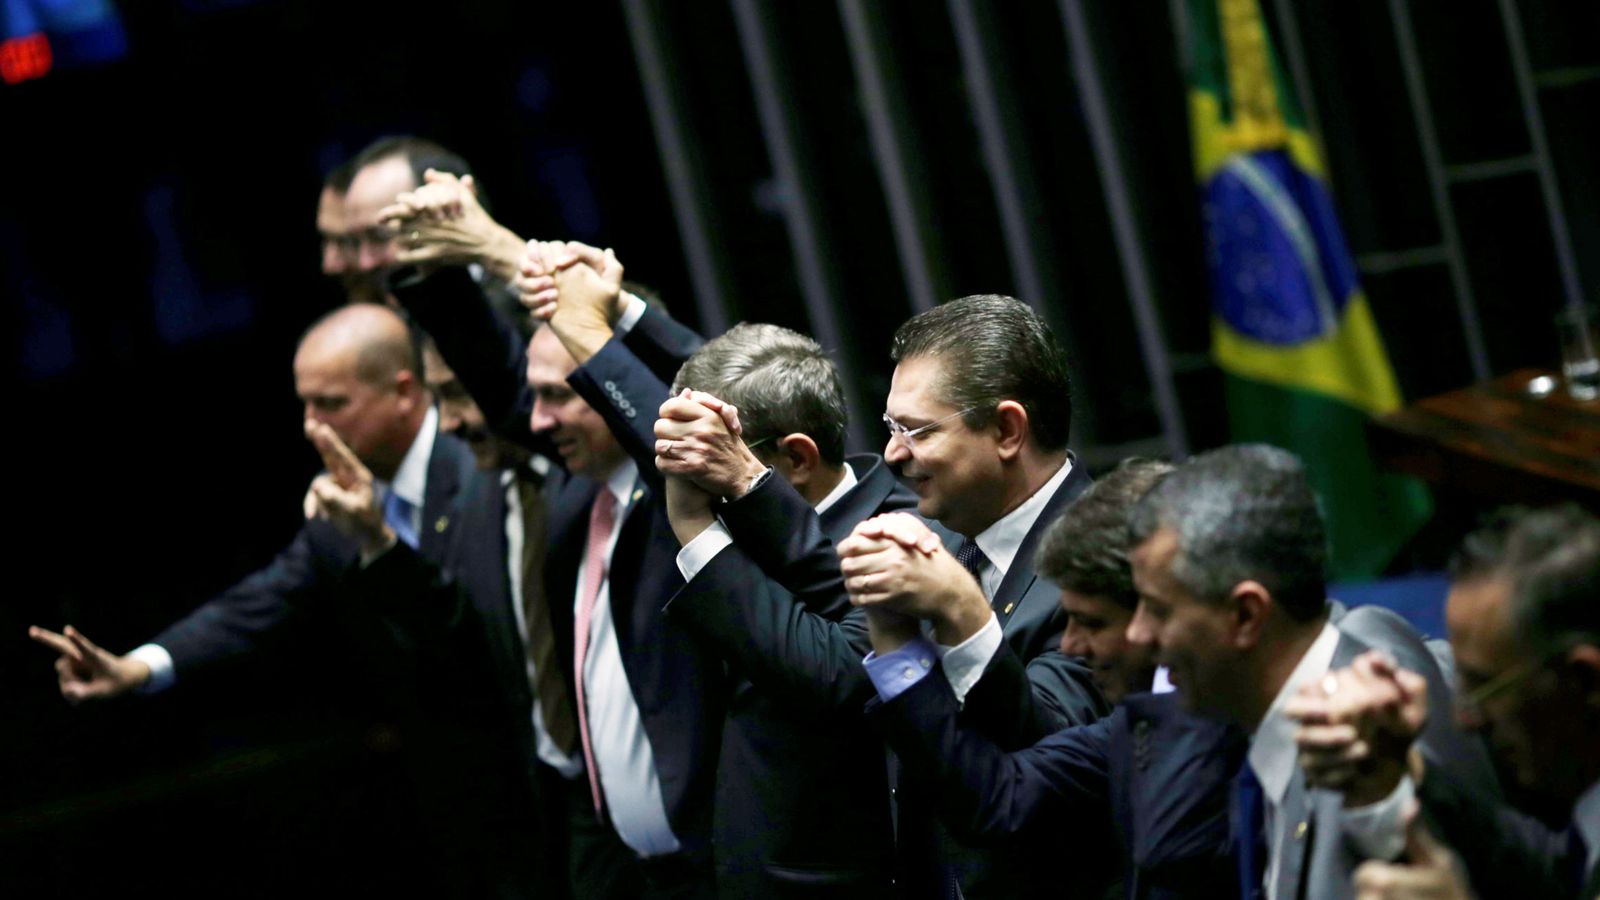 Foto: Senadores brasileños celebran el resultado de la votación para apartar a Dilma Rousseff, en Brasilia, el 12 de mayo de 2016 (Reuters).